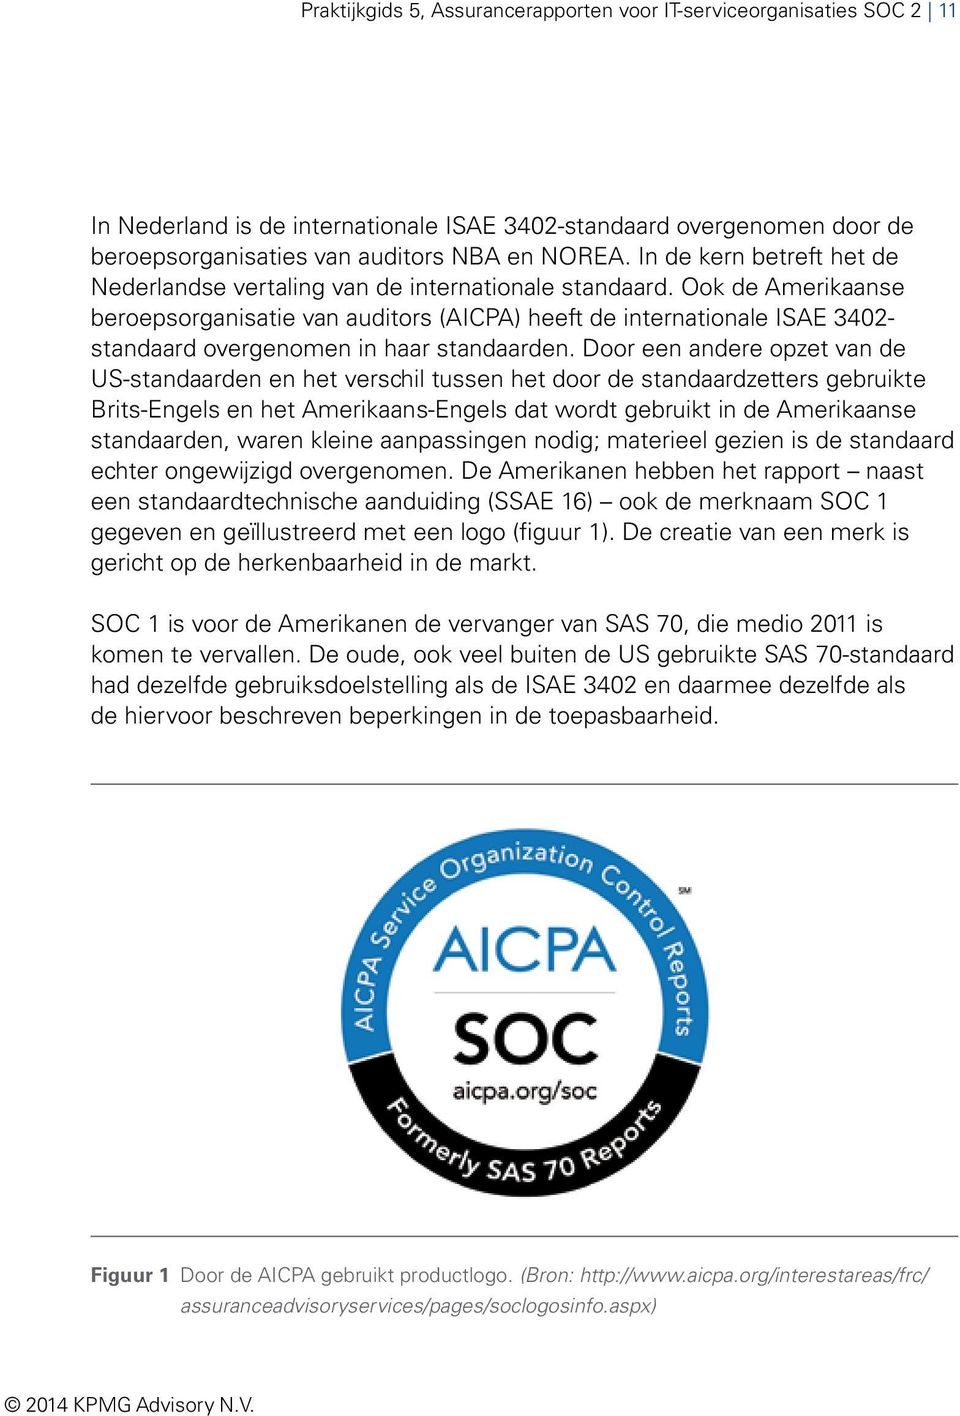 Ook de Amerikaanse beroepsorganisatie van auditors (AICPA) heeft de internationale ISAE 3402- standaard overgenomen in haar standaarden.